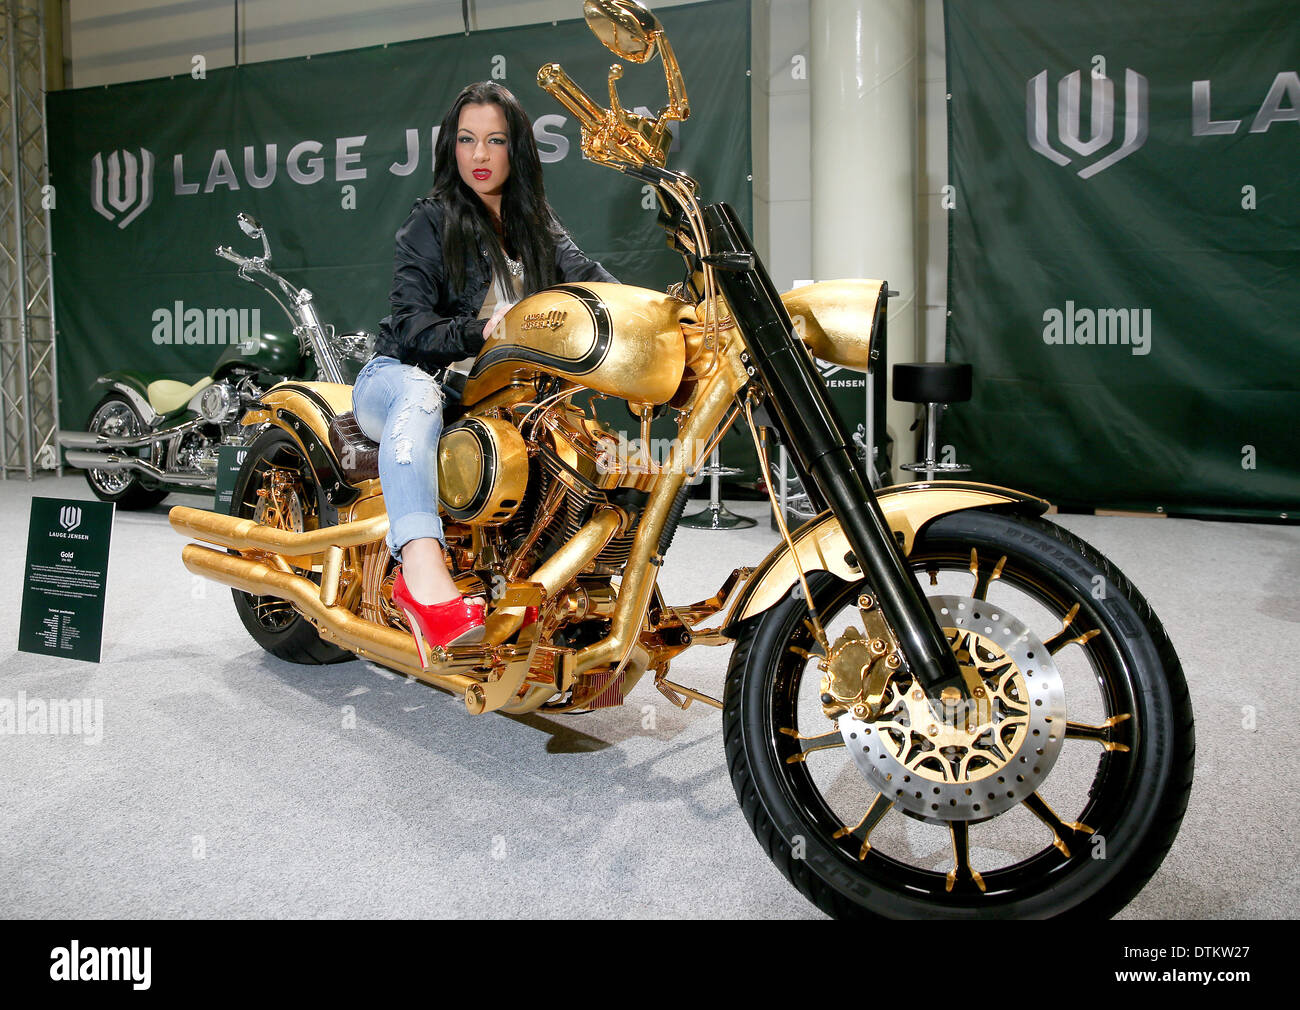 Hamburg, Deutschland. 20. Februar 2014. Modell Ramona posiert auf dem  650.000 Euro teuerste Motorrad der Welt vom dänischen Motorradhersteller  Lauge Jensen, einer modifizierten Harley Davidson im Expo Center in  Hamburg, Deutschland, 20.